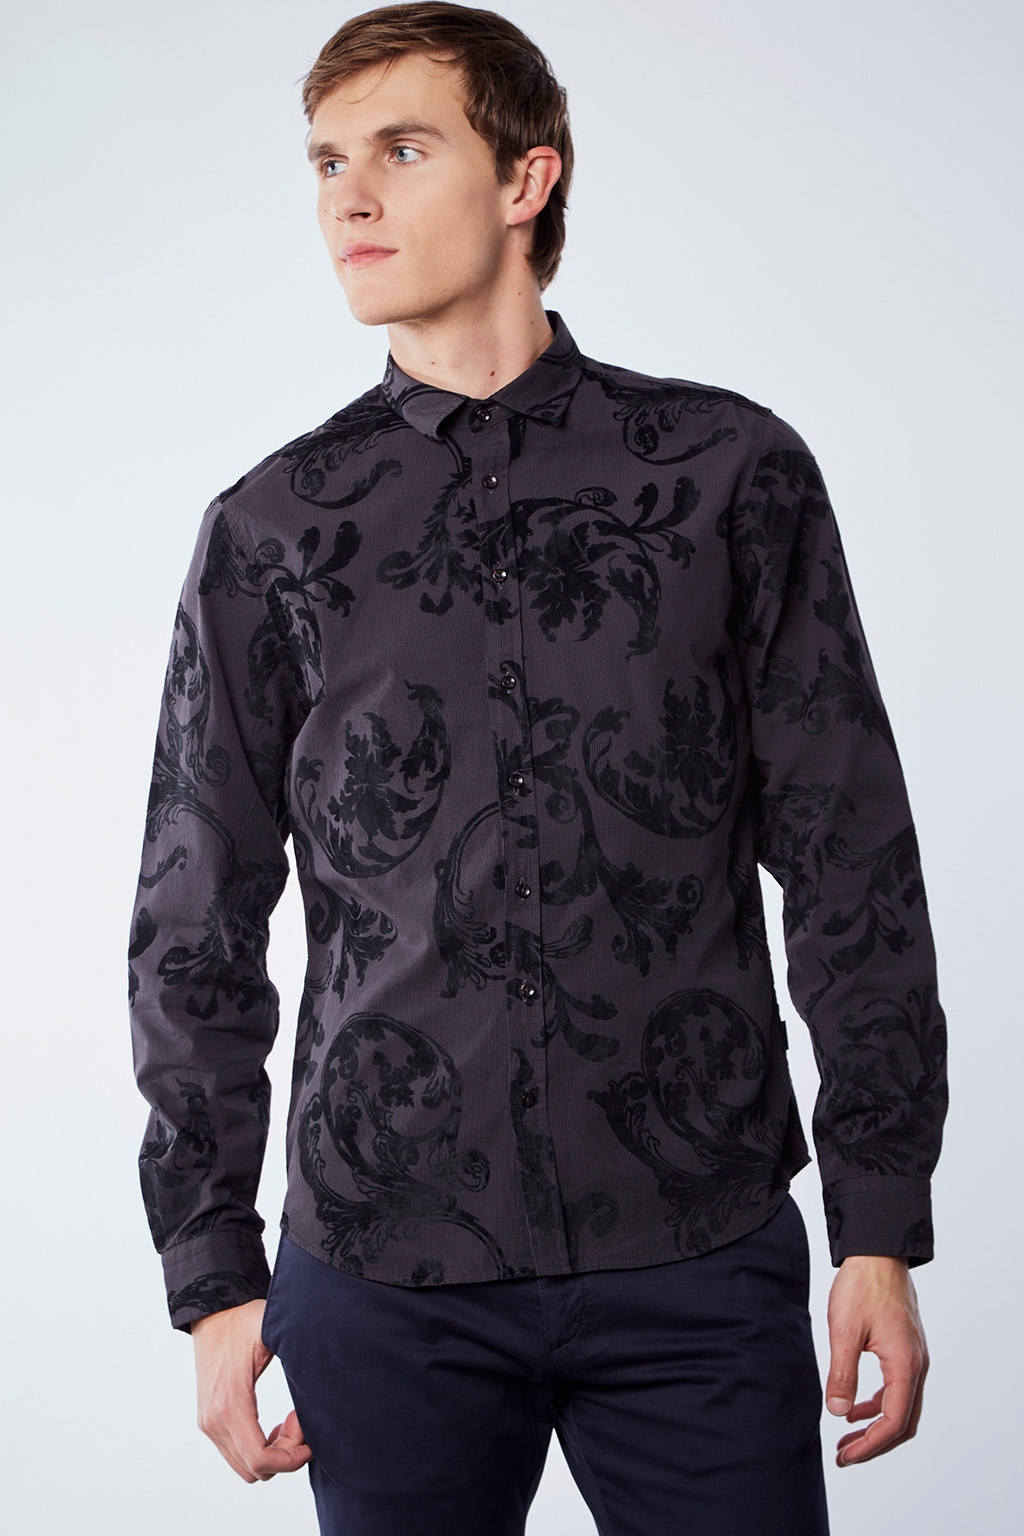 Vente privée Izac disponible sur Showroomprivé vêtements et accessoires pour homme, chemise grise et noire à motif